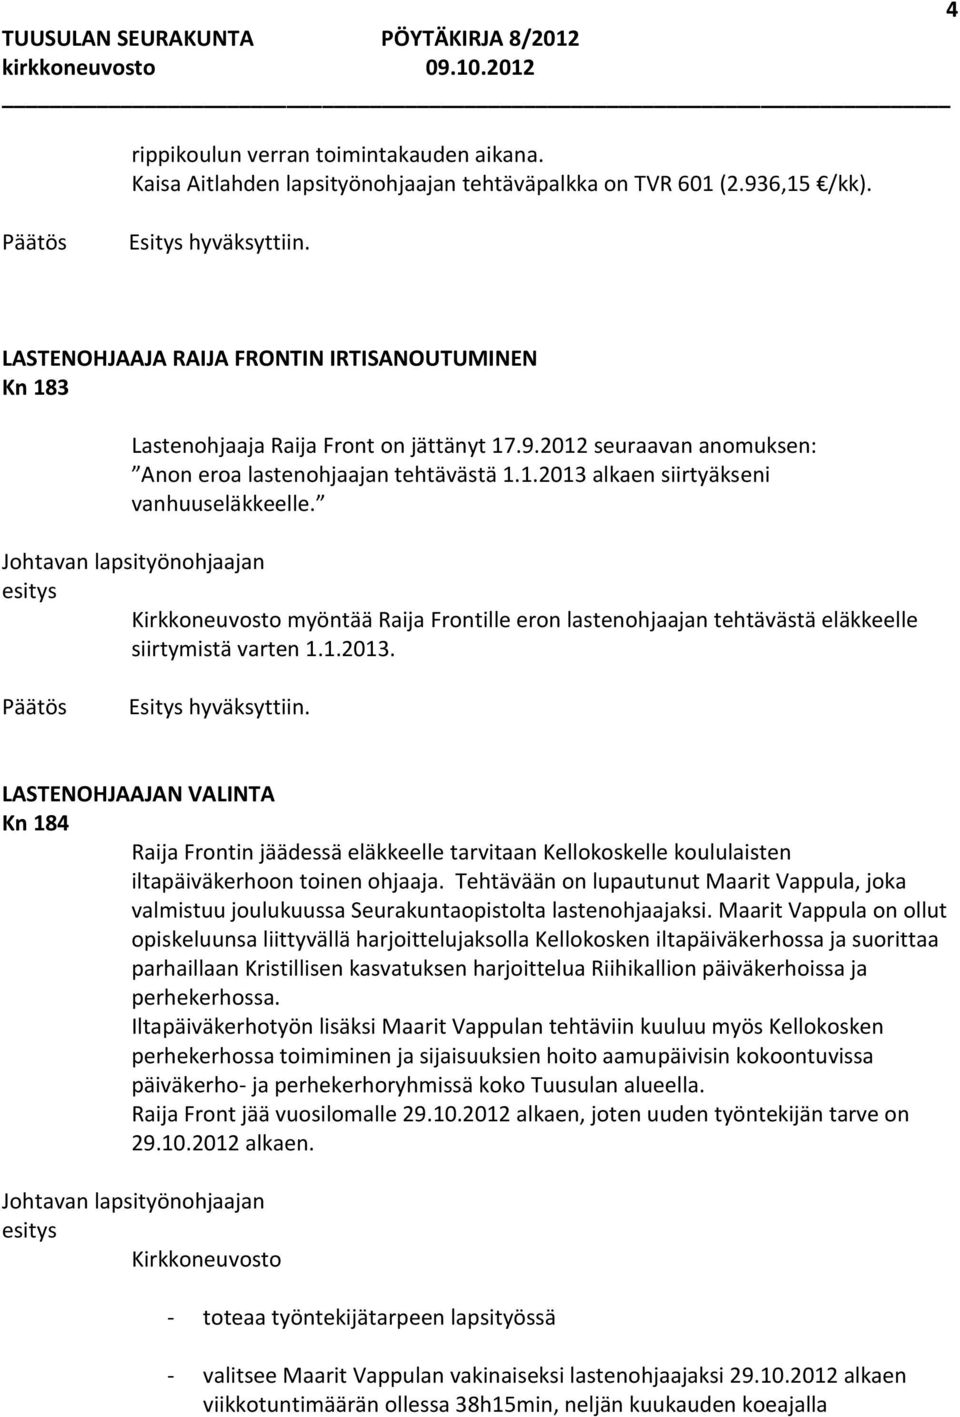 Johtavan lapsityönohjaajan Kirkkoneuvosto myöntää Raija Frontille eron lastenohjaajan tehtävästä eläkkeelle siirtymistä varten 1.1.2013.